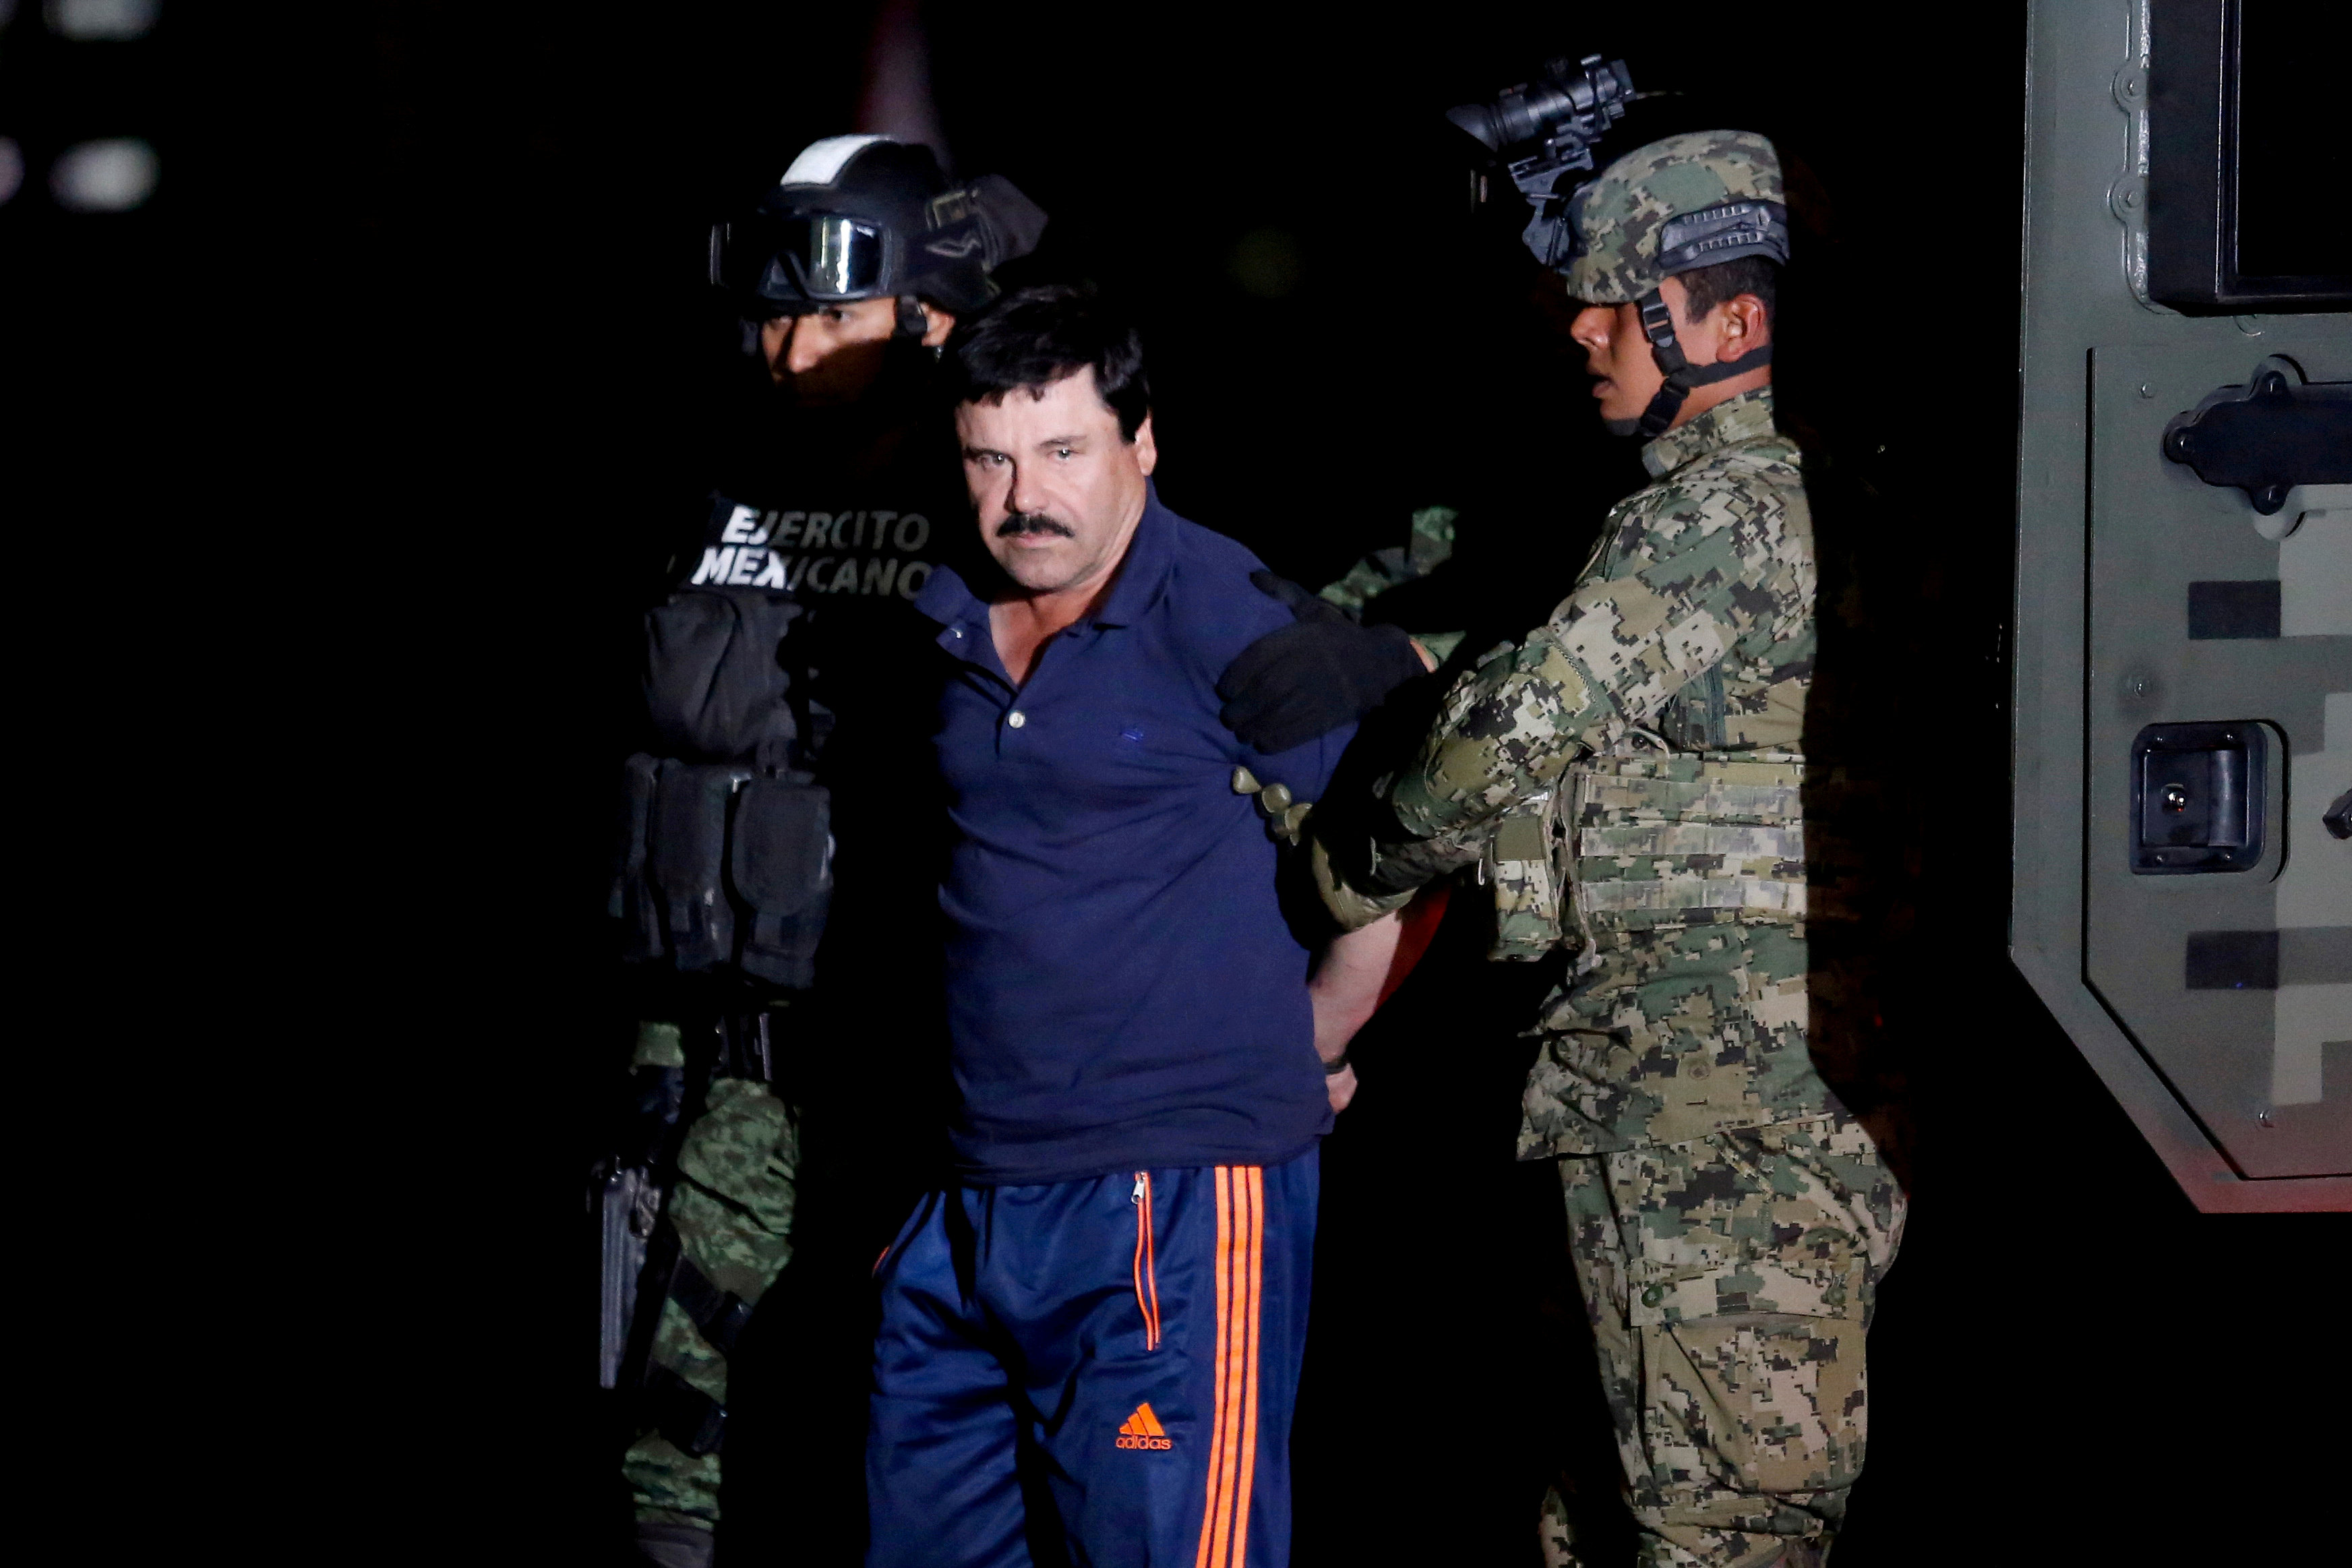 Para Guzmán Loera, esa detención marcaría su destino (Foto: REUTERS/Tomas Bravo)